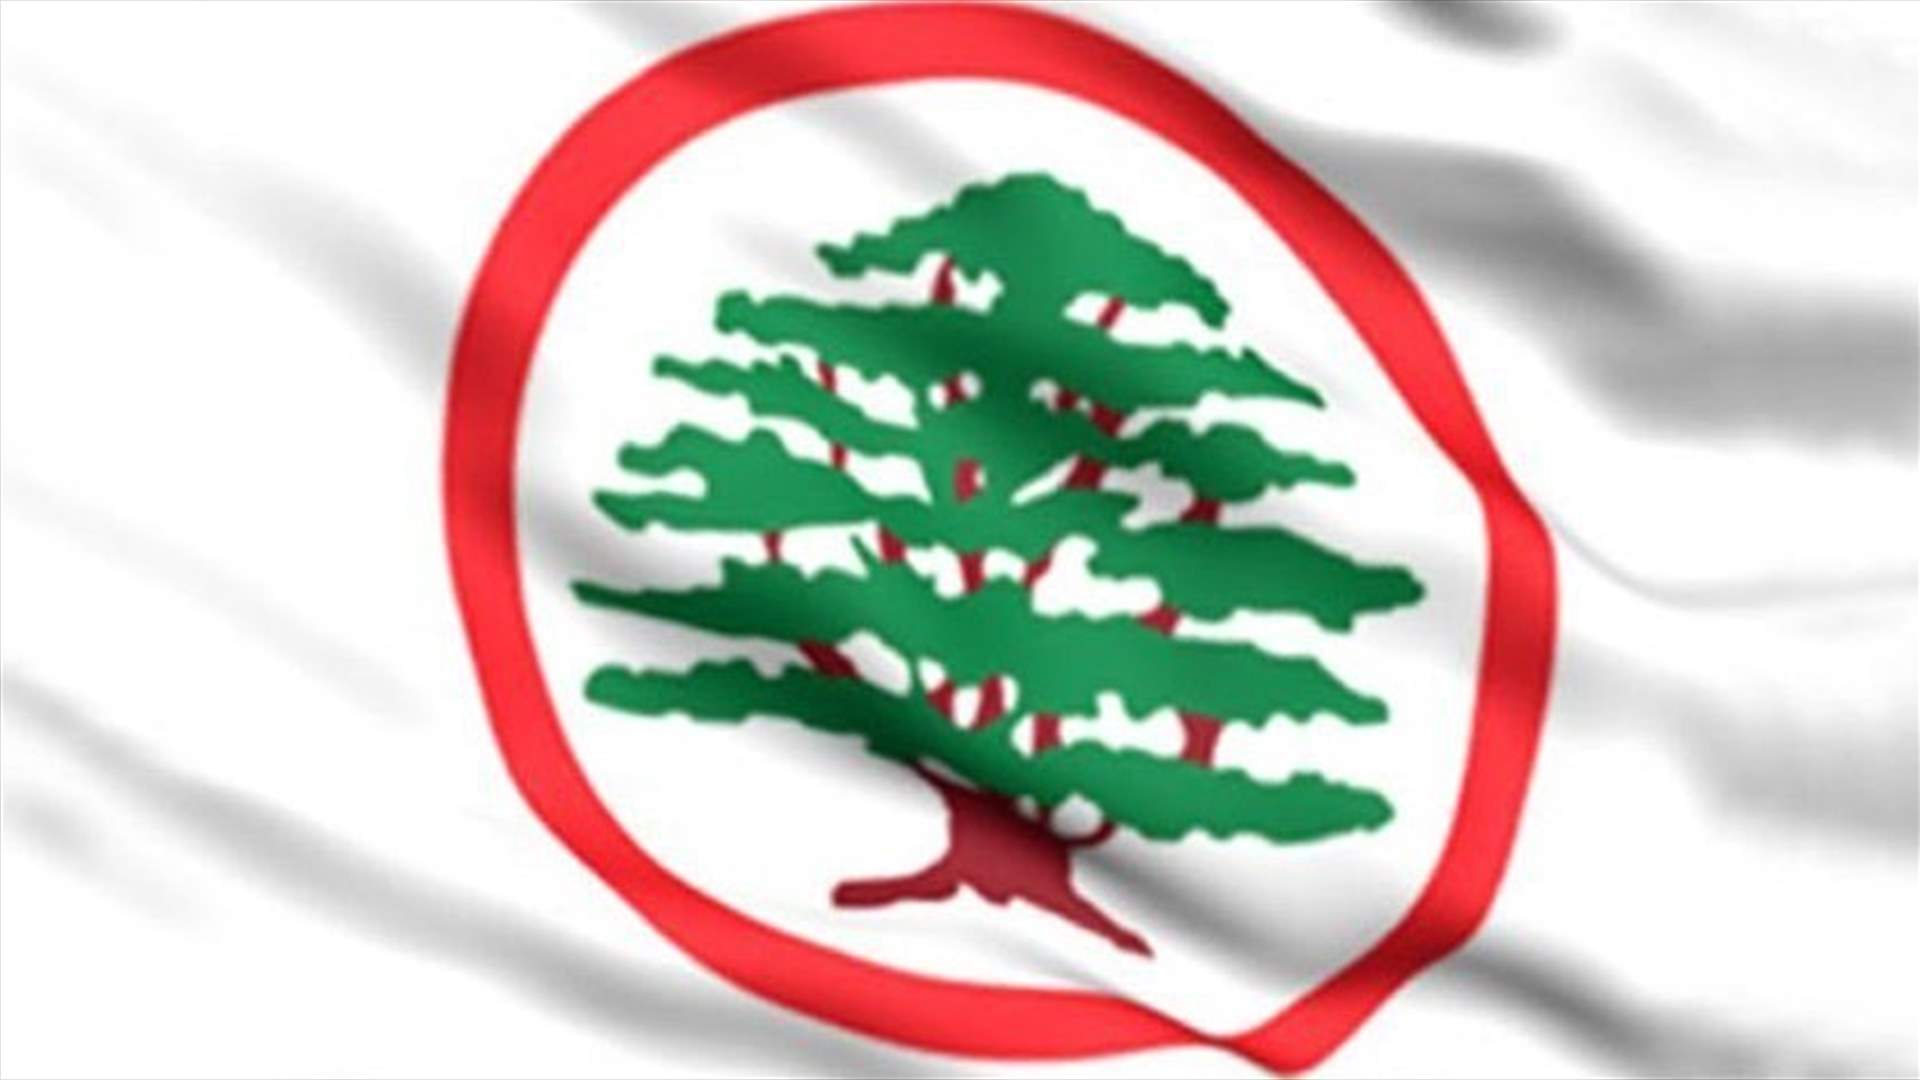 القوات اللبنانية: كنّا نتمنى على النائبة القعقور أن تتَّسِم بالحدّ الأدنى من الموضوعية